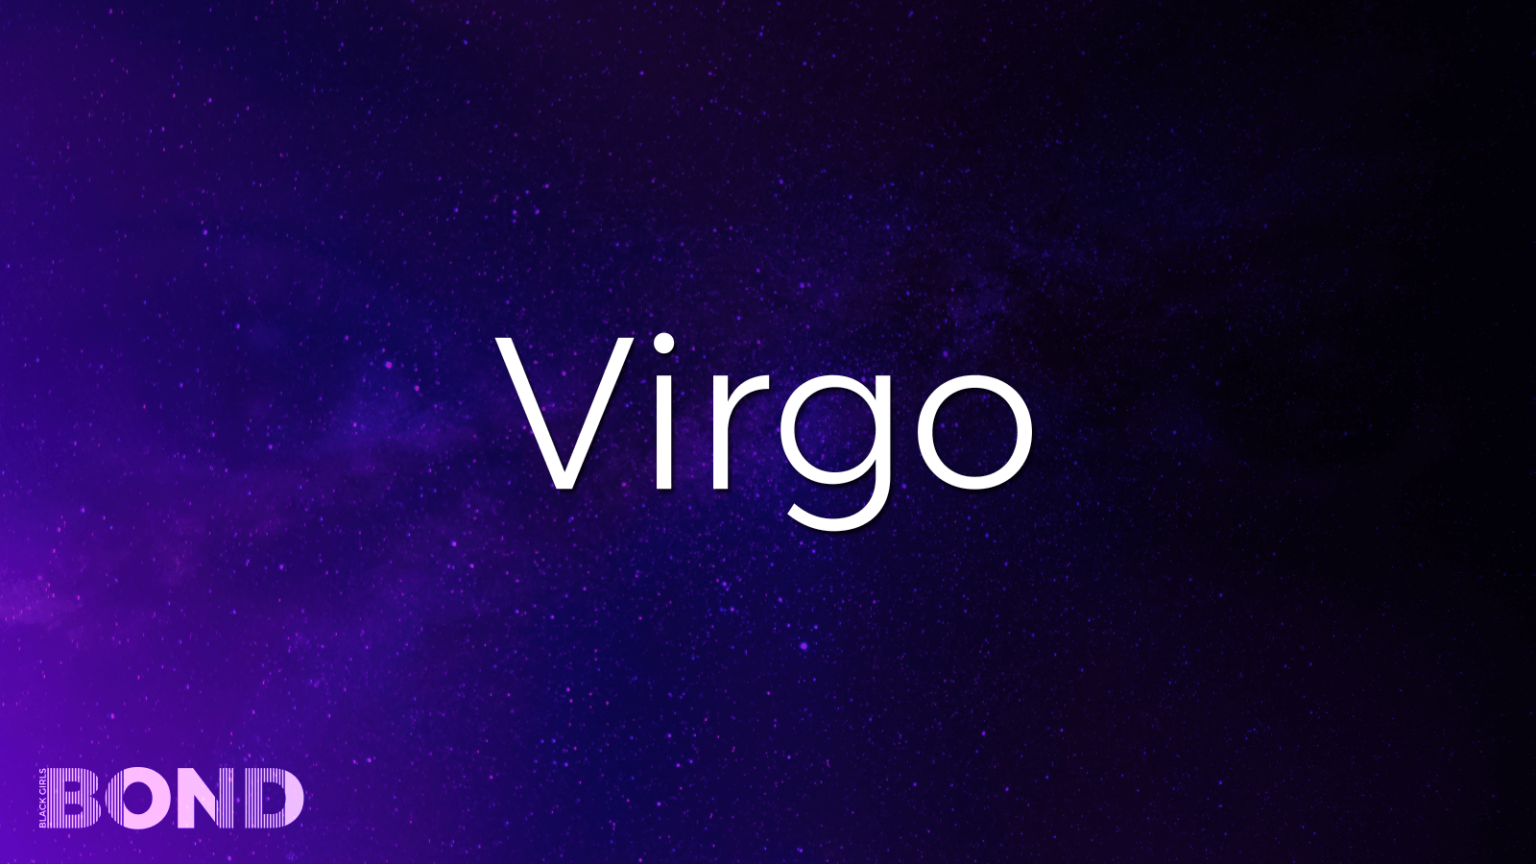 Virgo Horoscope & Astrological Sign